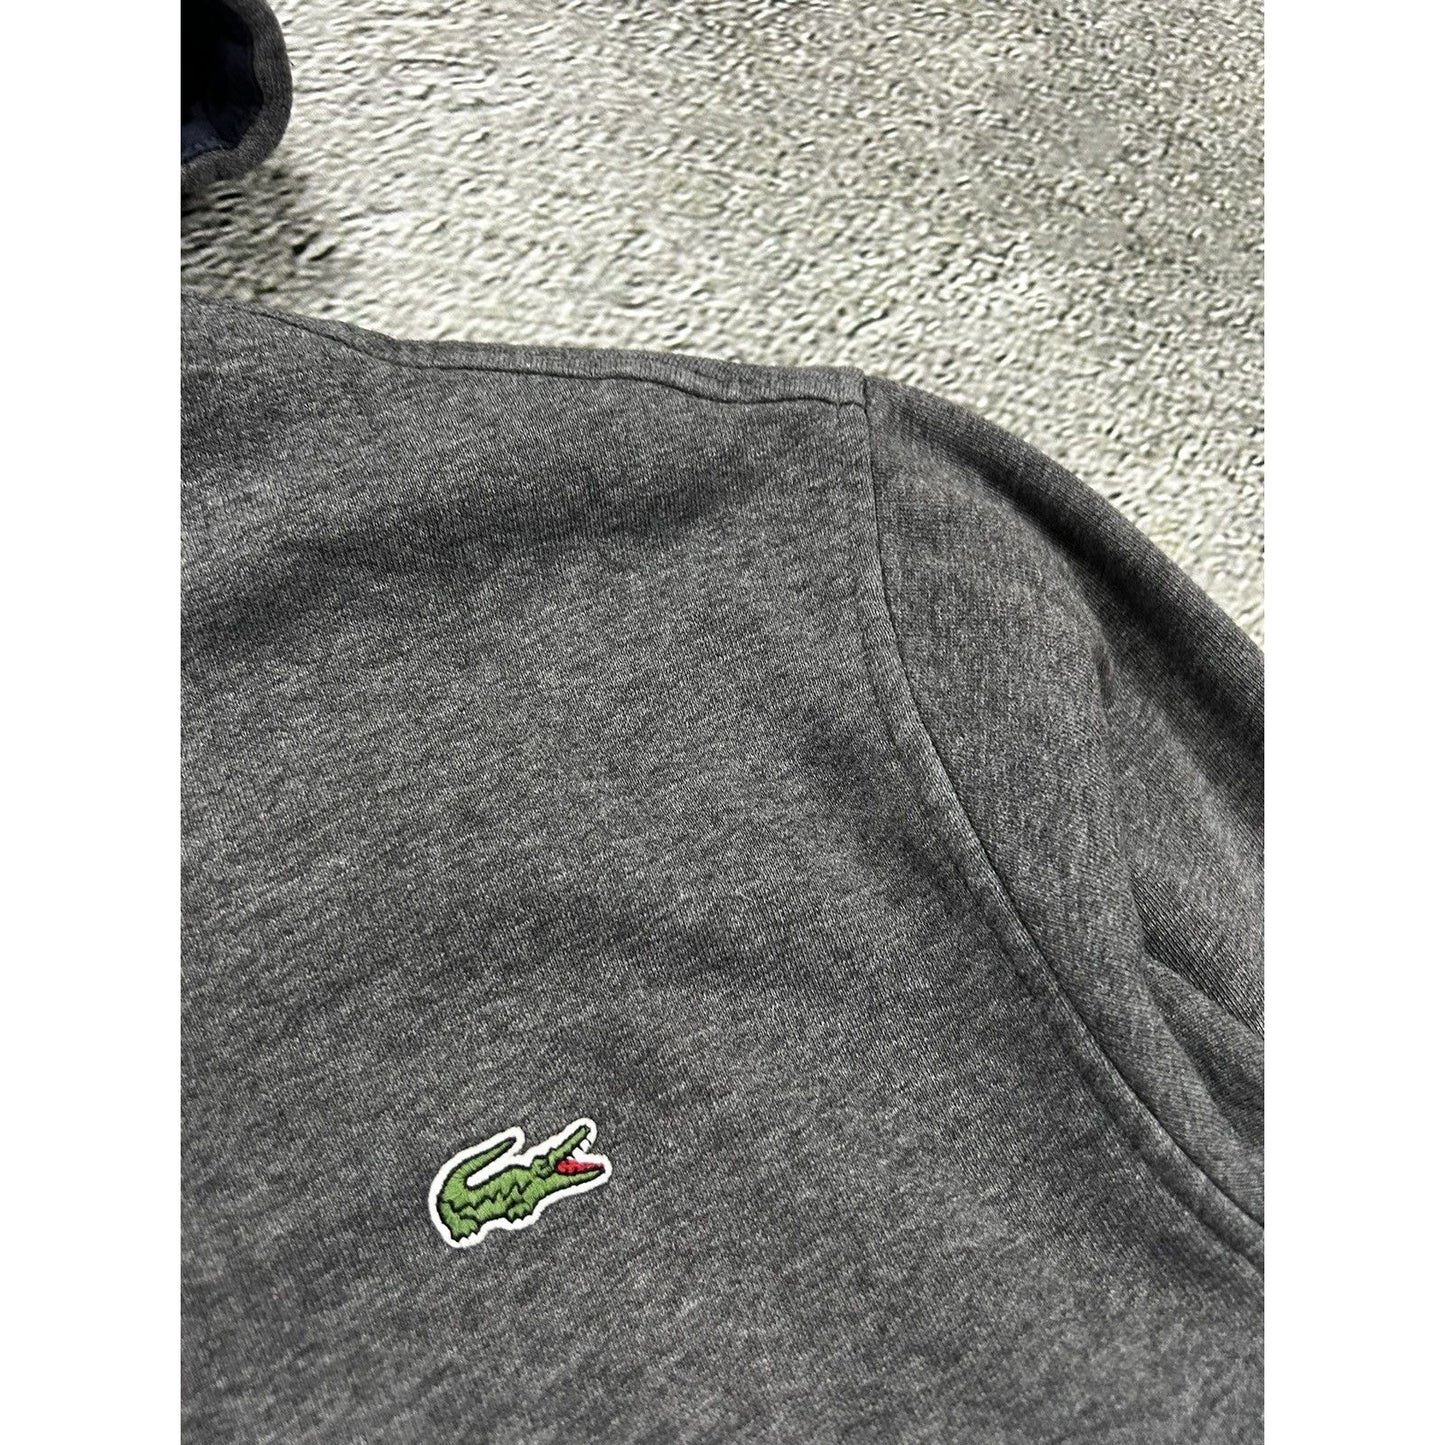 Lacoste zip hoodie grey sweatshirt Sport